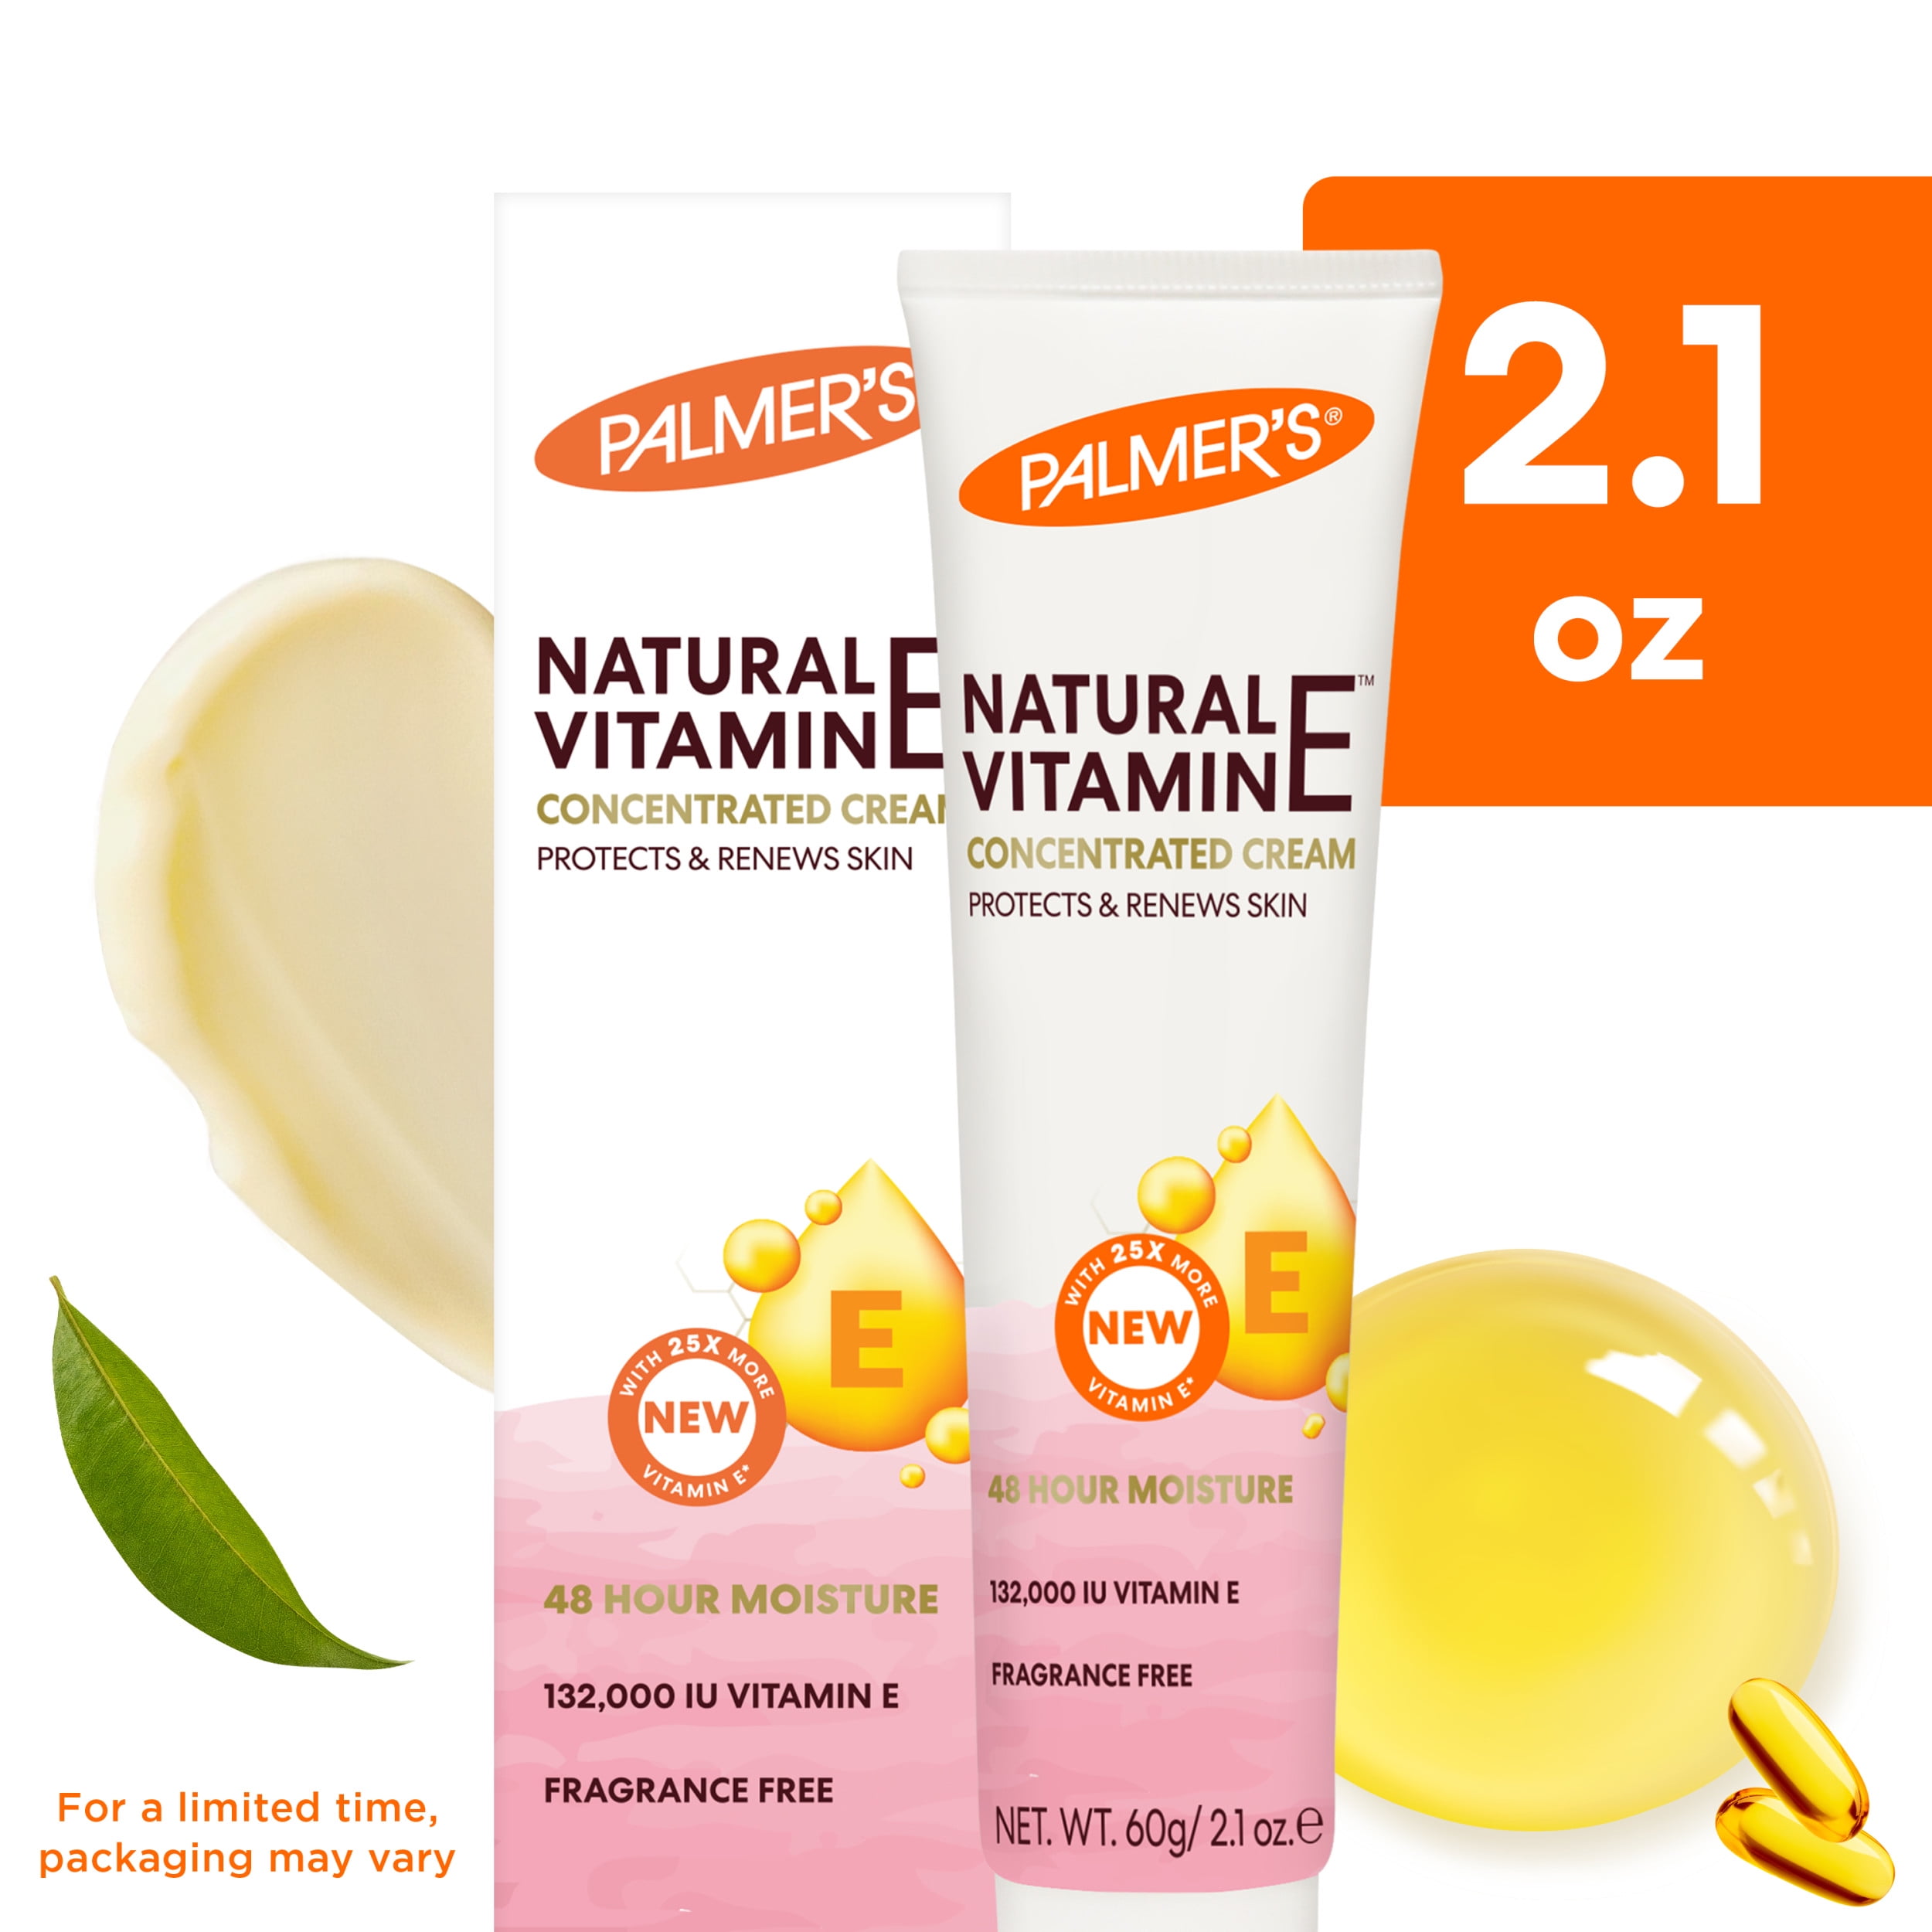 Palmer's Natural Vitamin E Concentrated Cream, 2.1 oz.